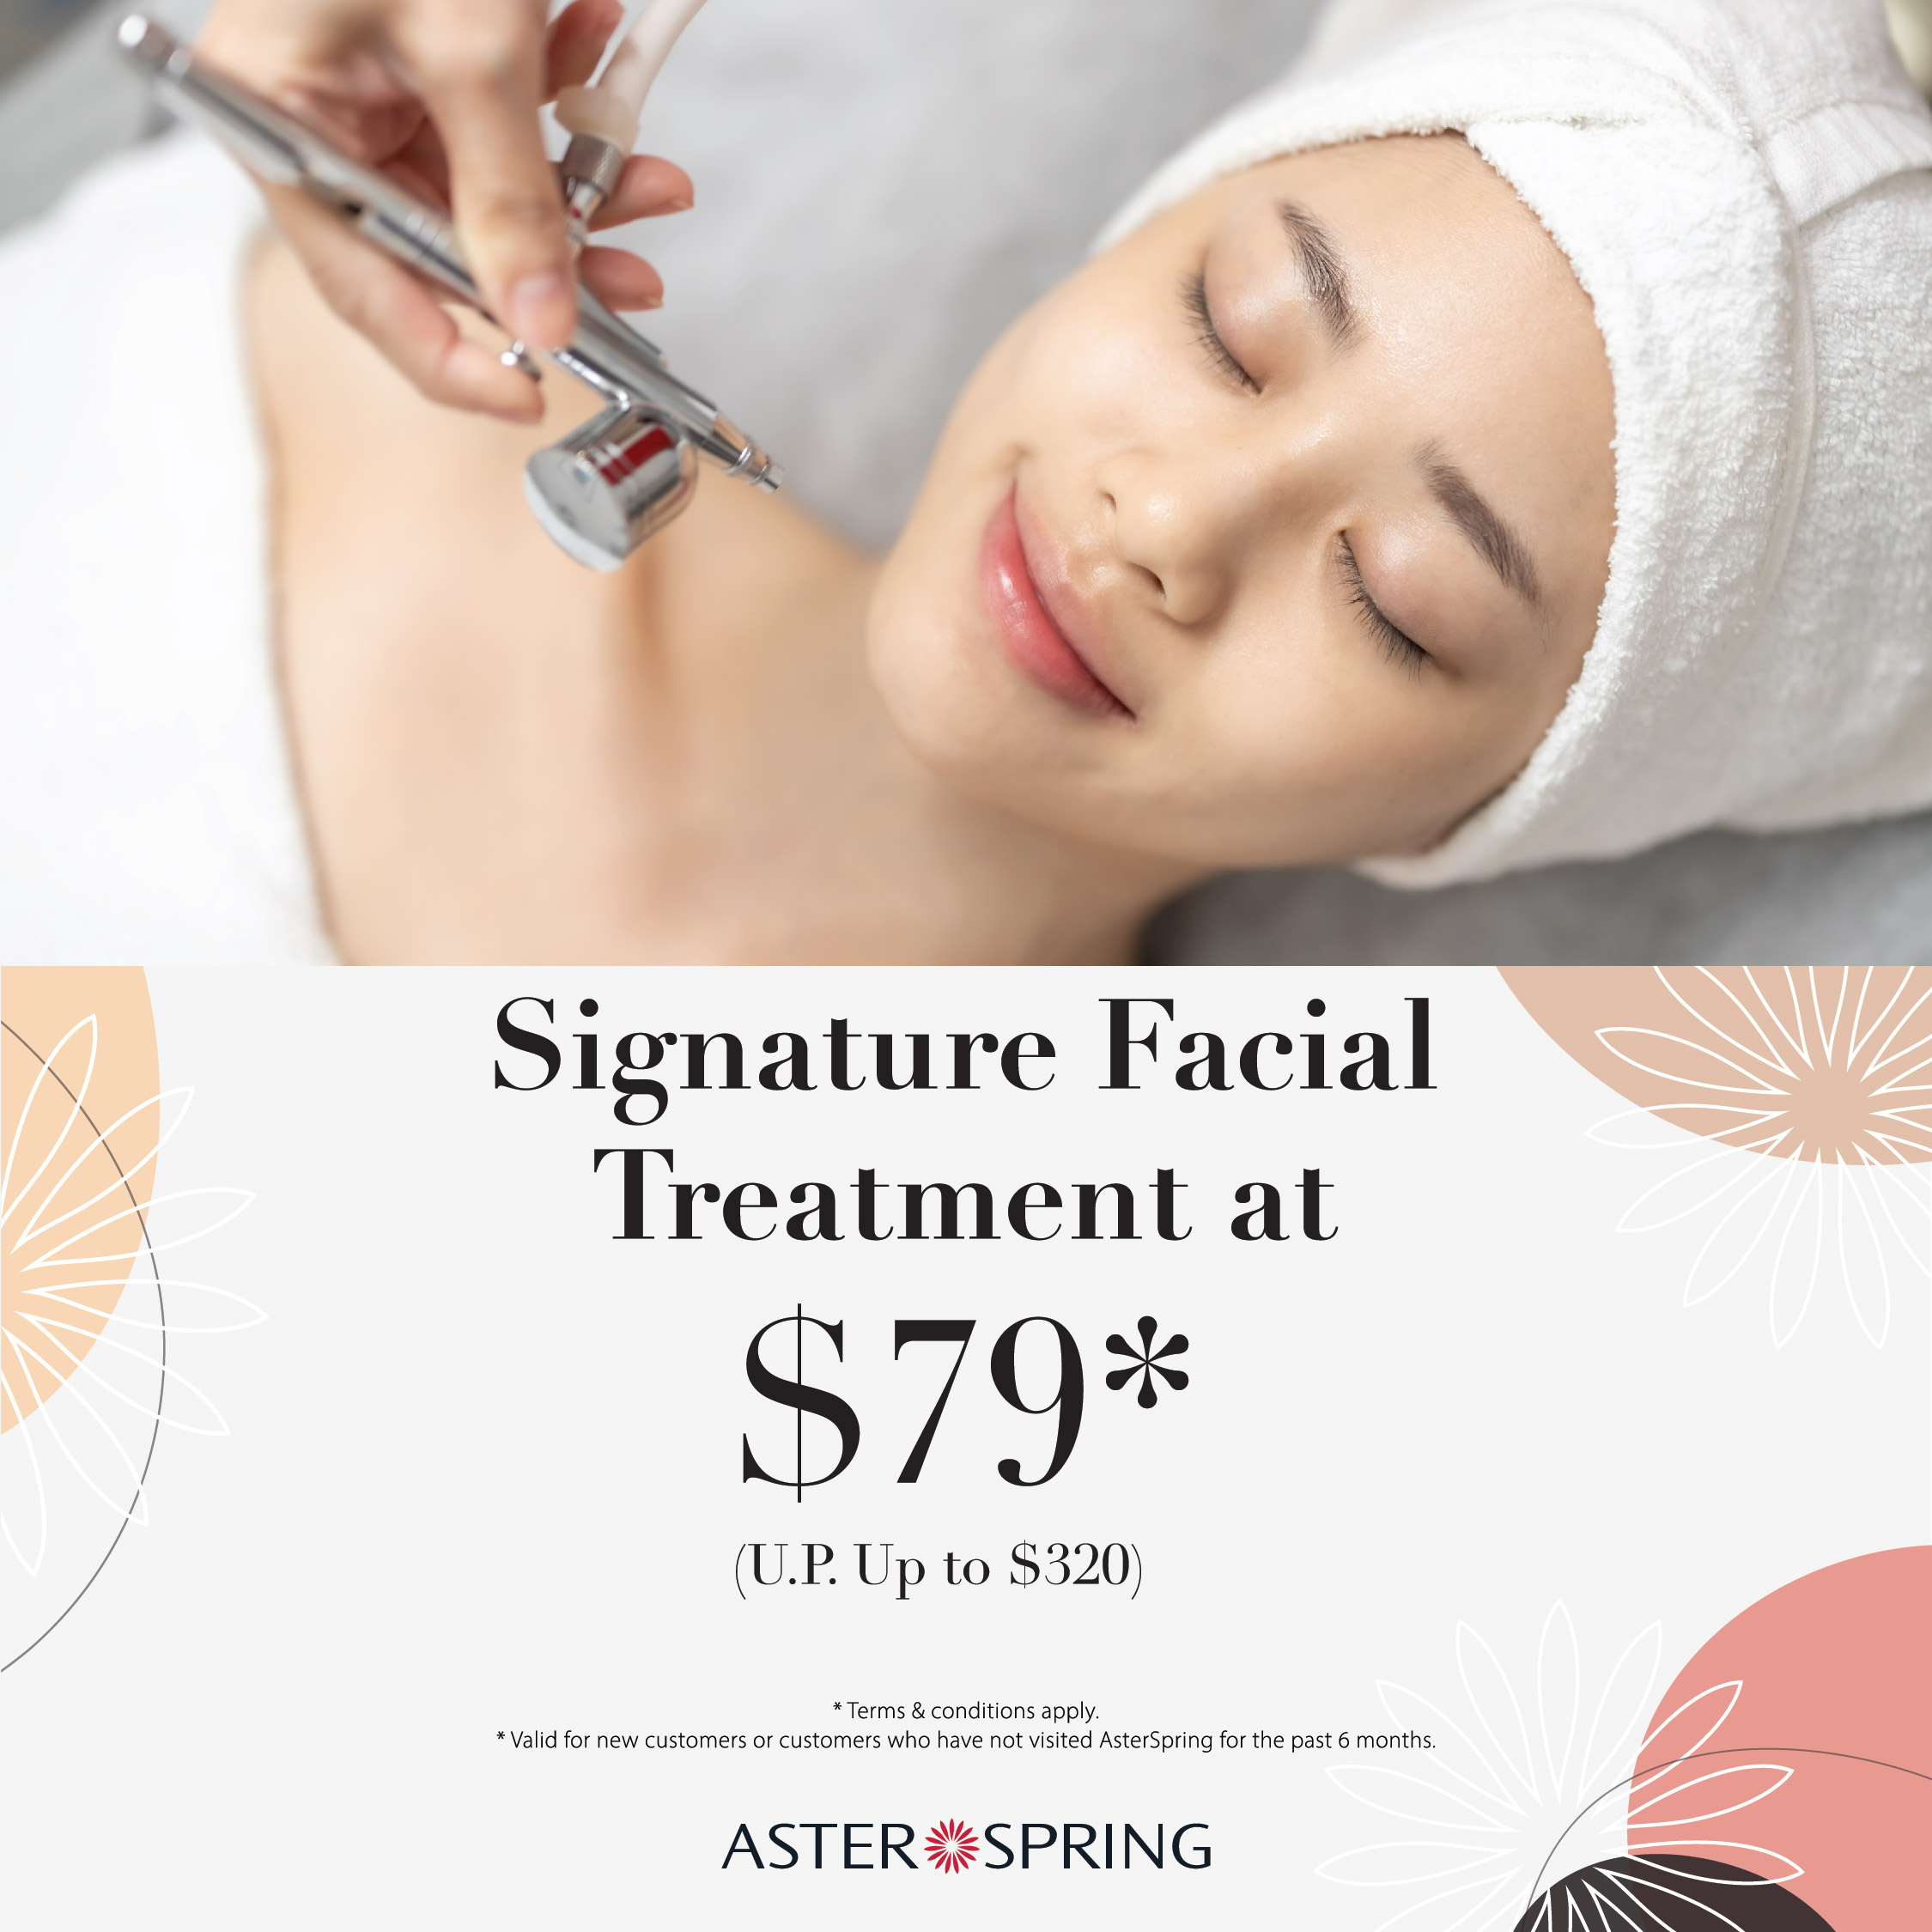 Signature Facial treatment